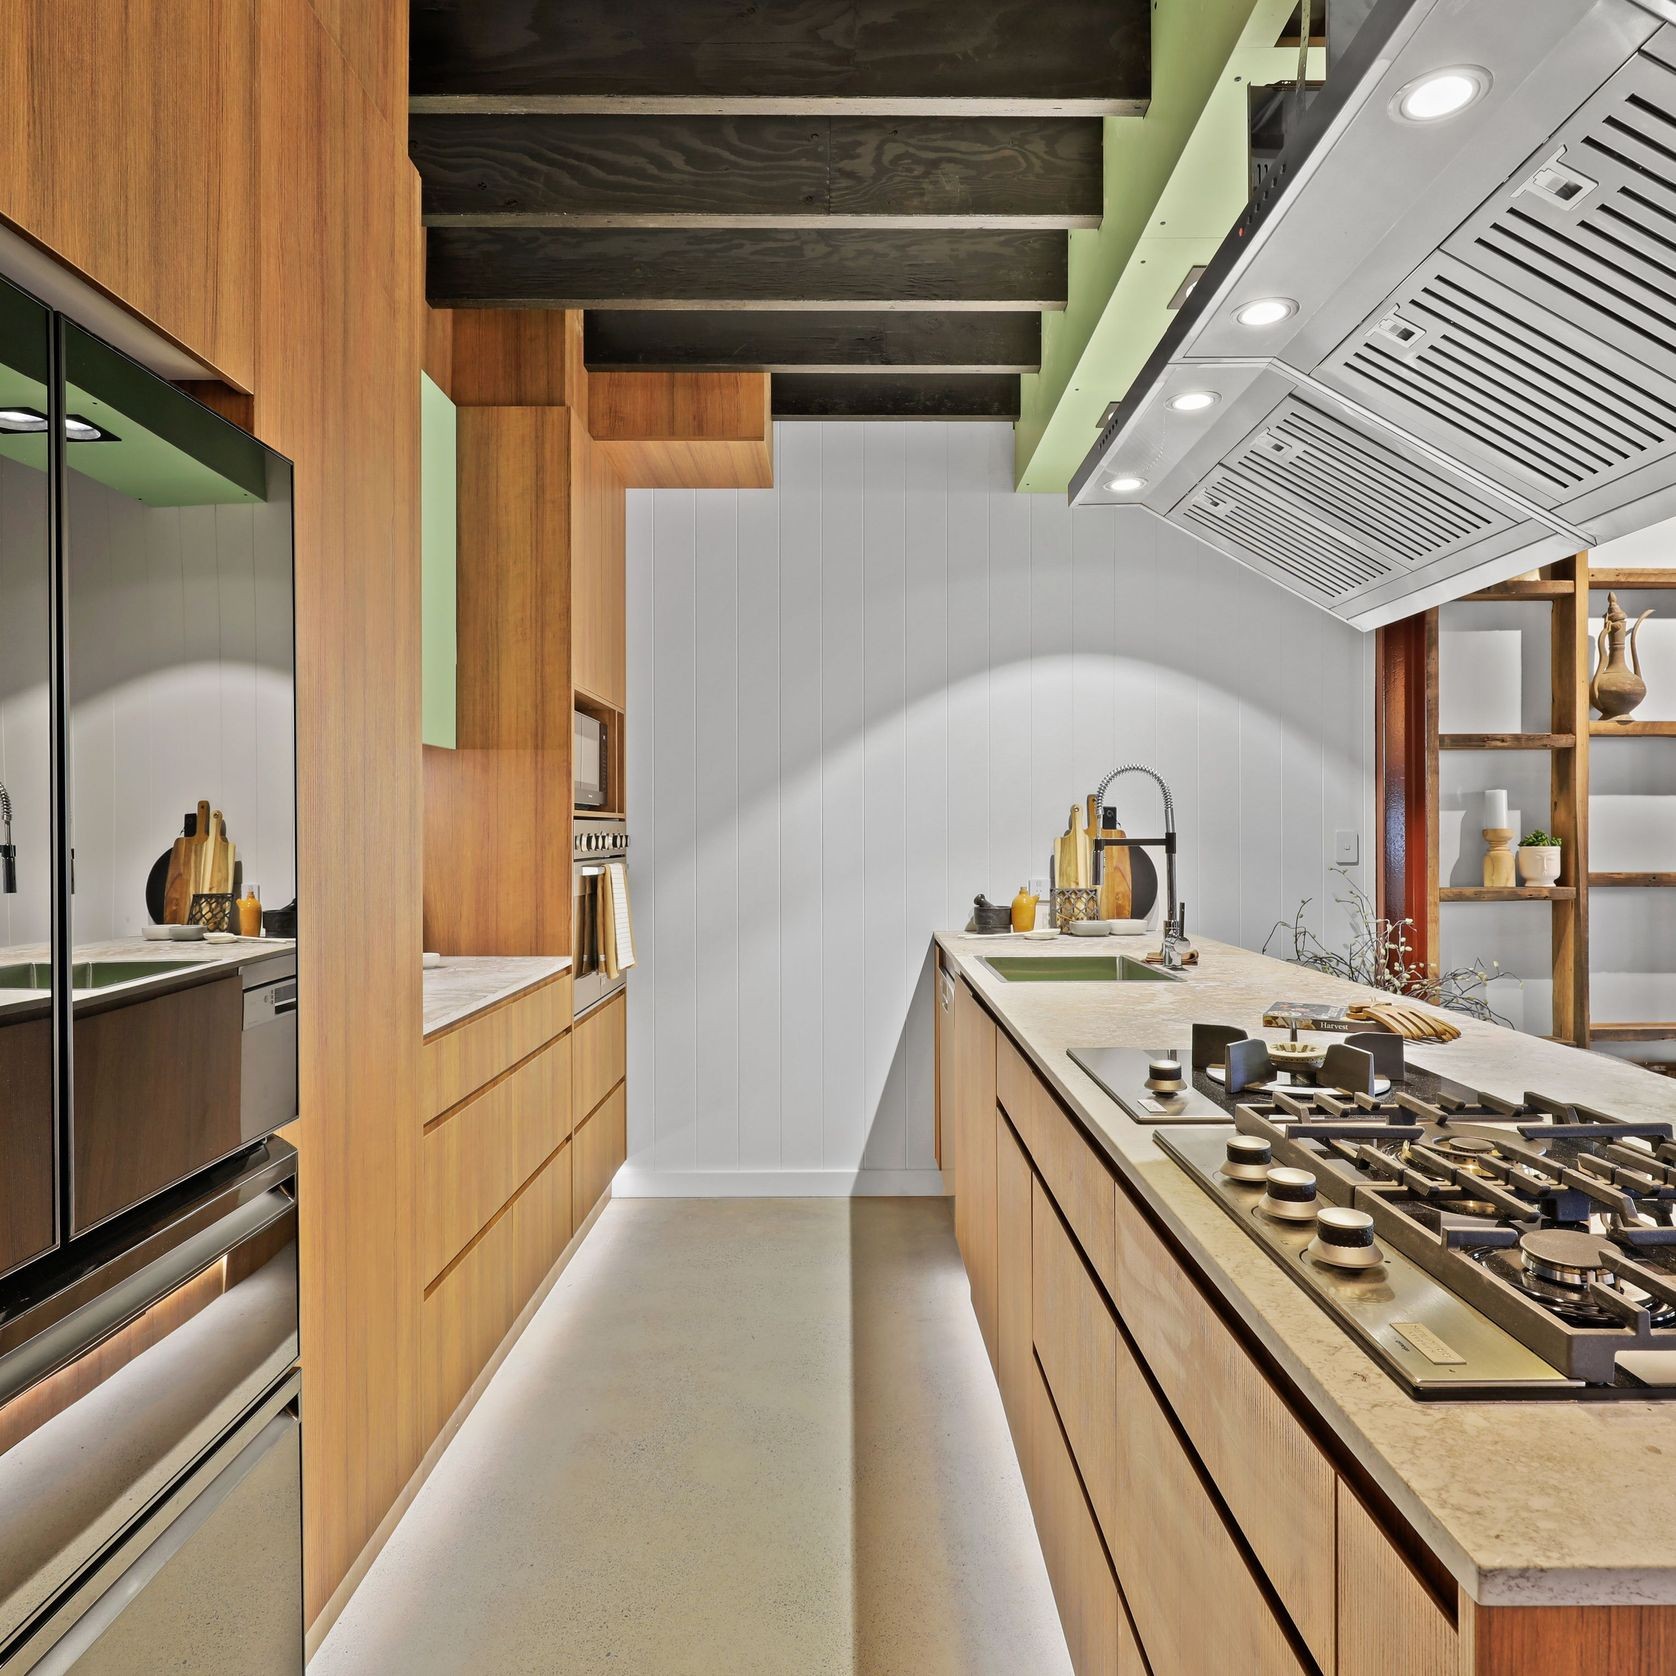 Warm Woodgrain Kitchen gallery detail image